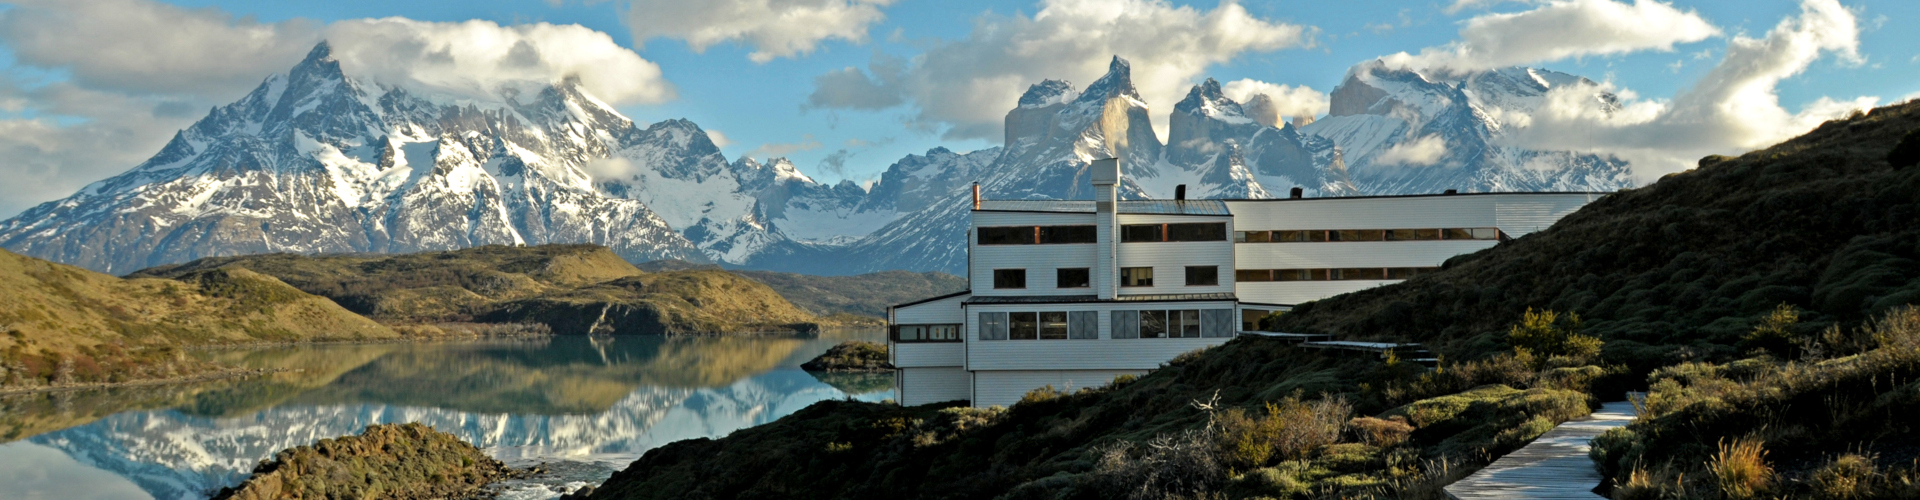 Chile, Explora Torres del Paine, Panorama mit Hotelansicht, Latin America Tours